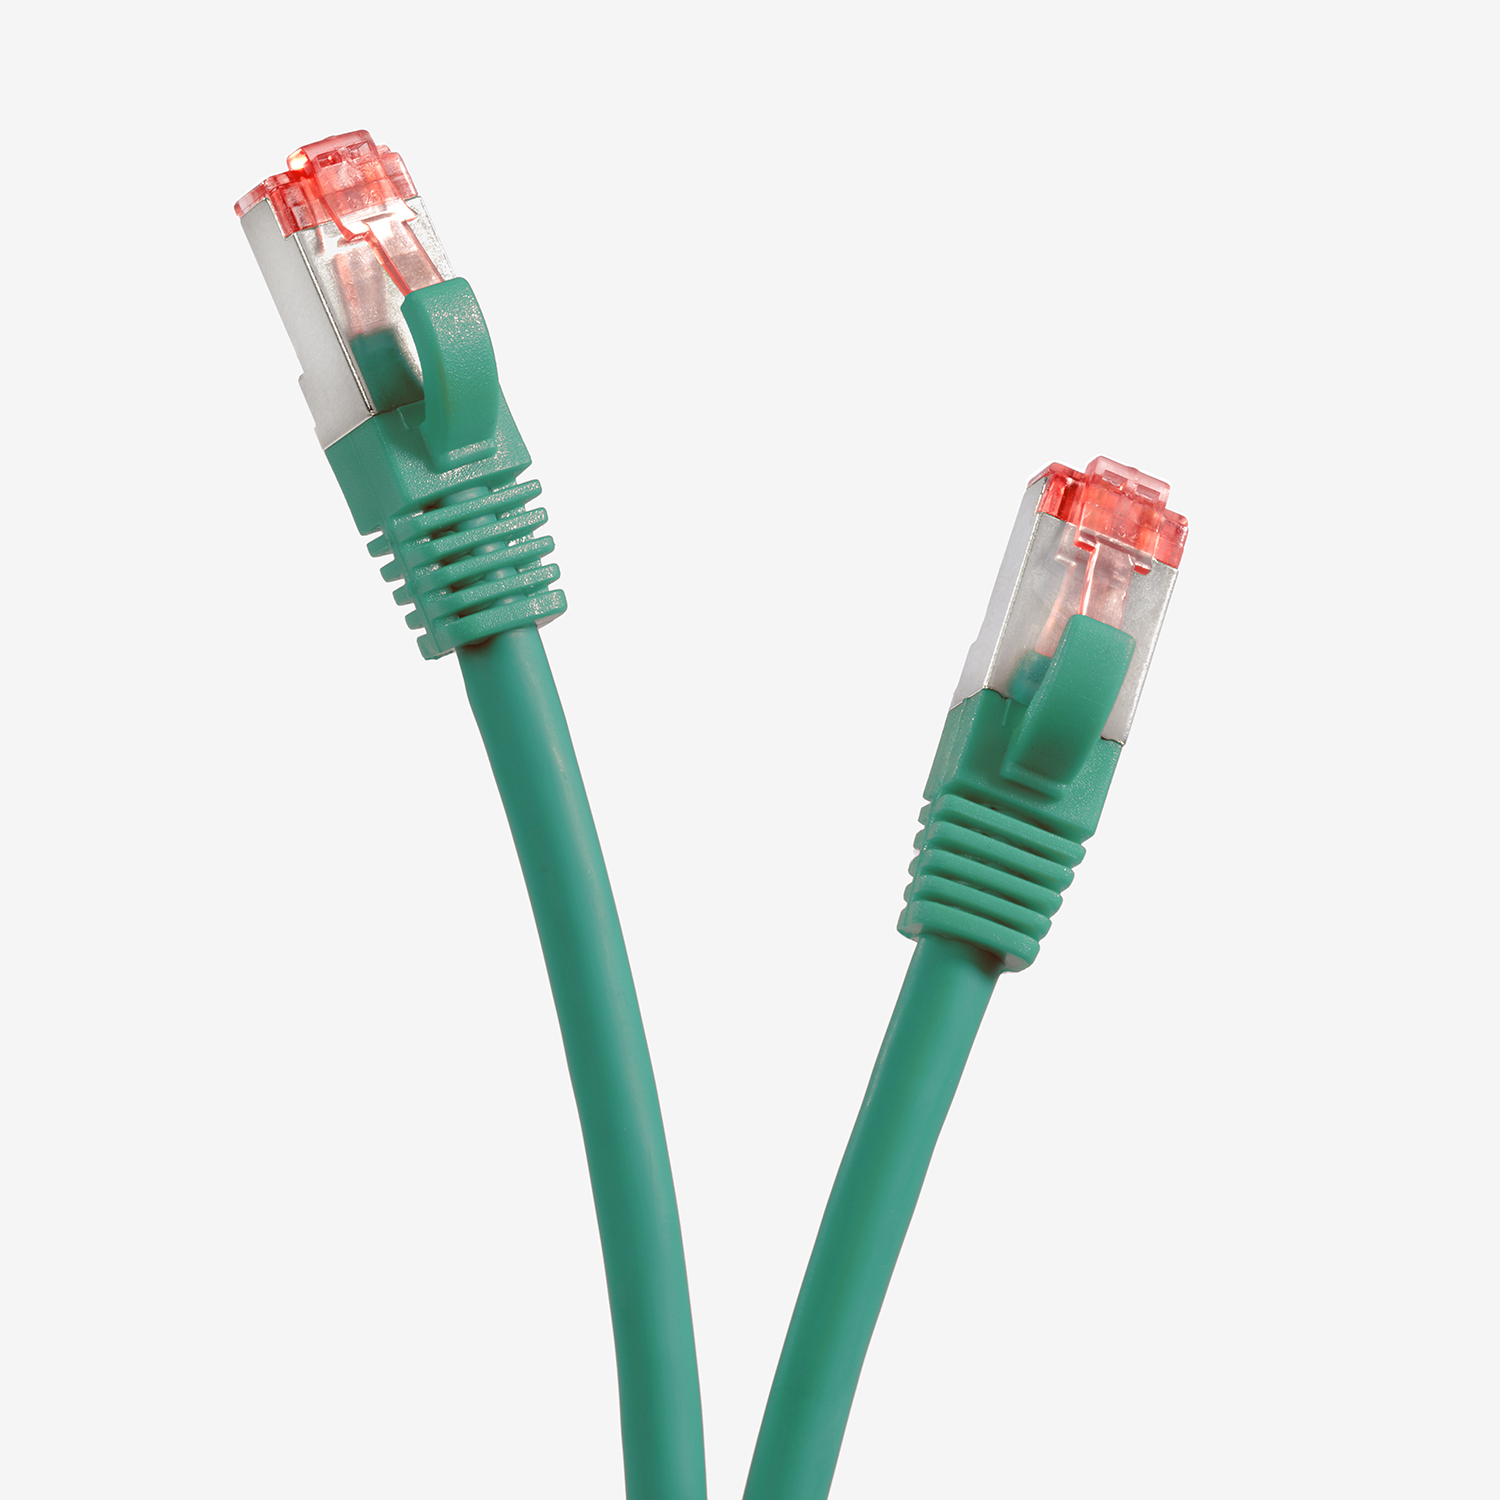 TPFNET 2m 2 Pack m 5er 1000Mbit, Patchkabel / S/FTP grün, Netzwerkkabel Netzwerkkabel,